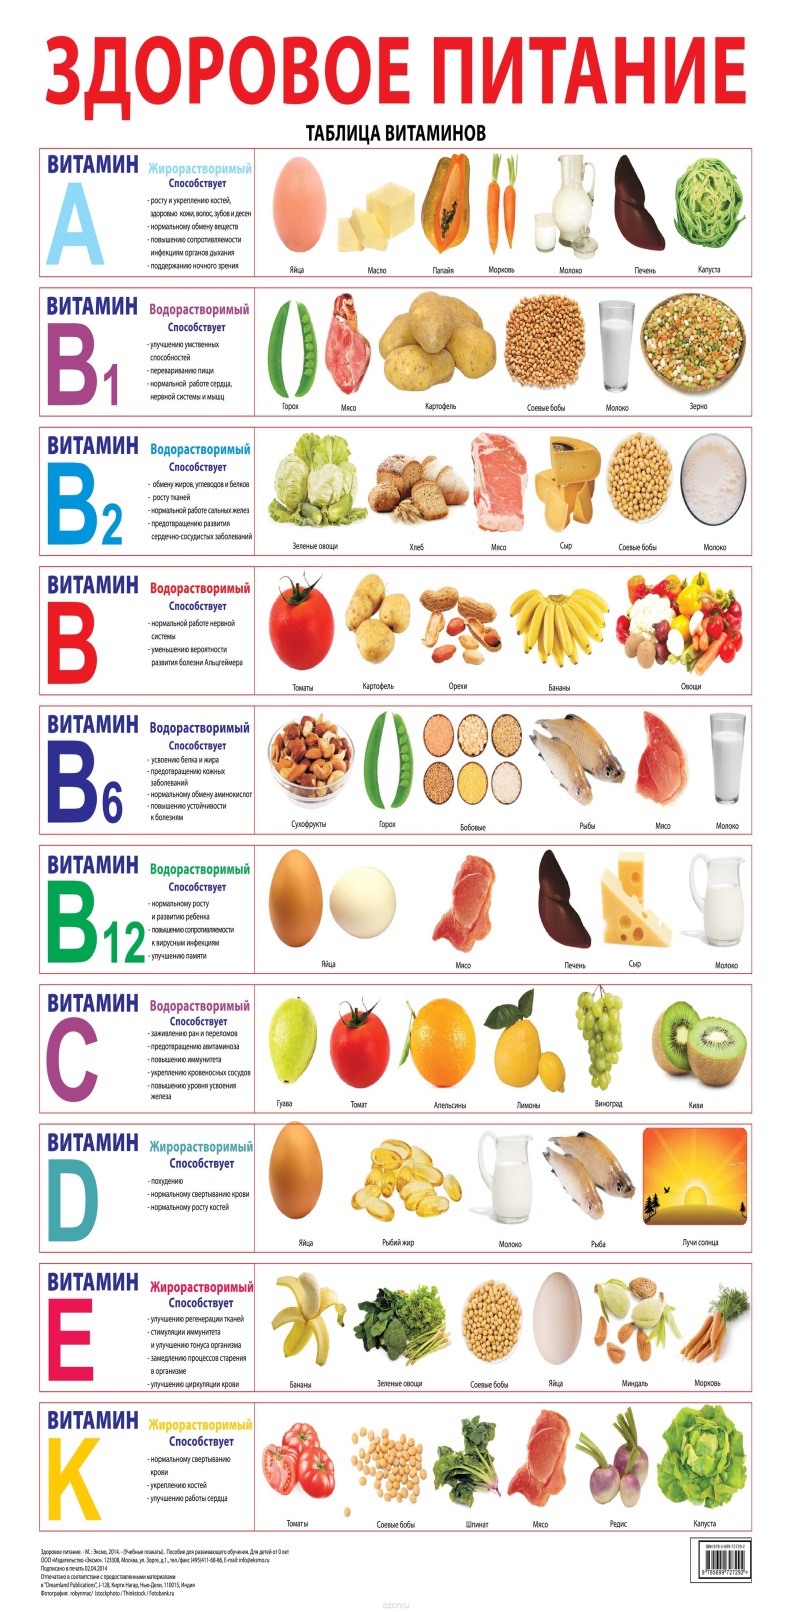 здоровое питание таблица витаминов